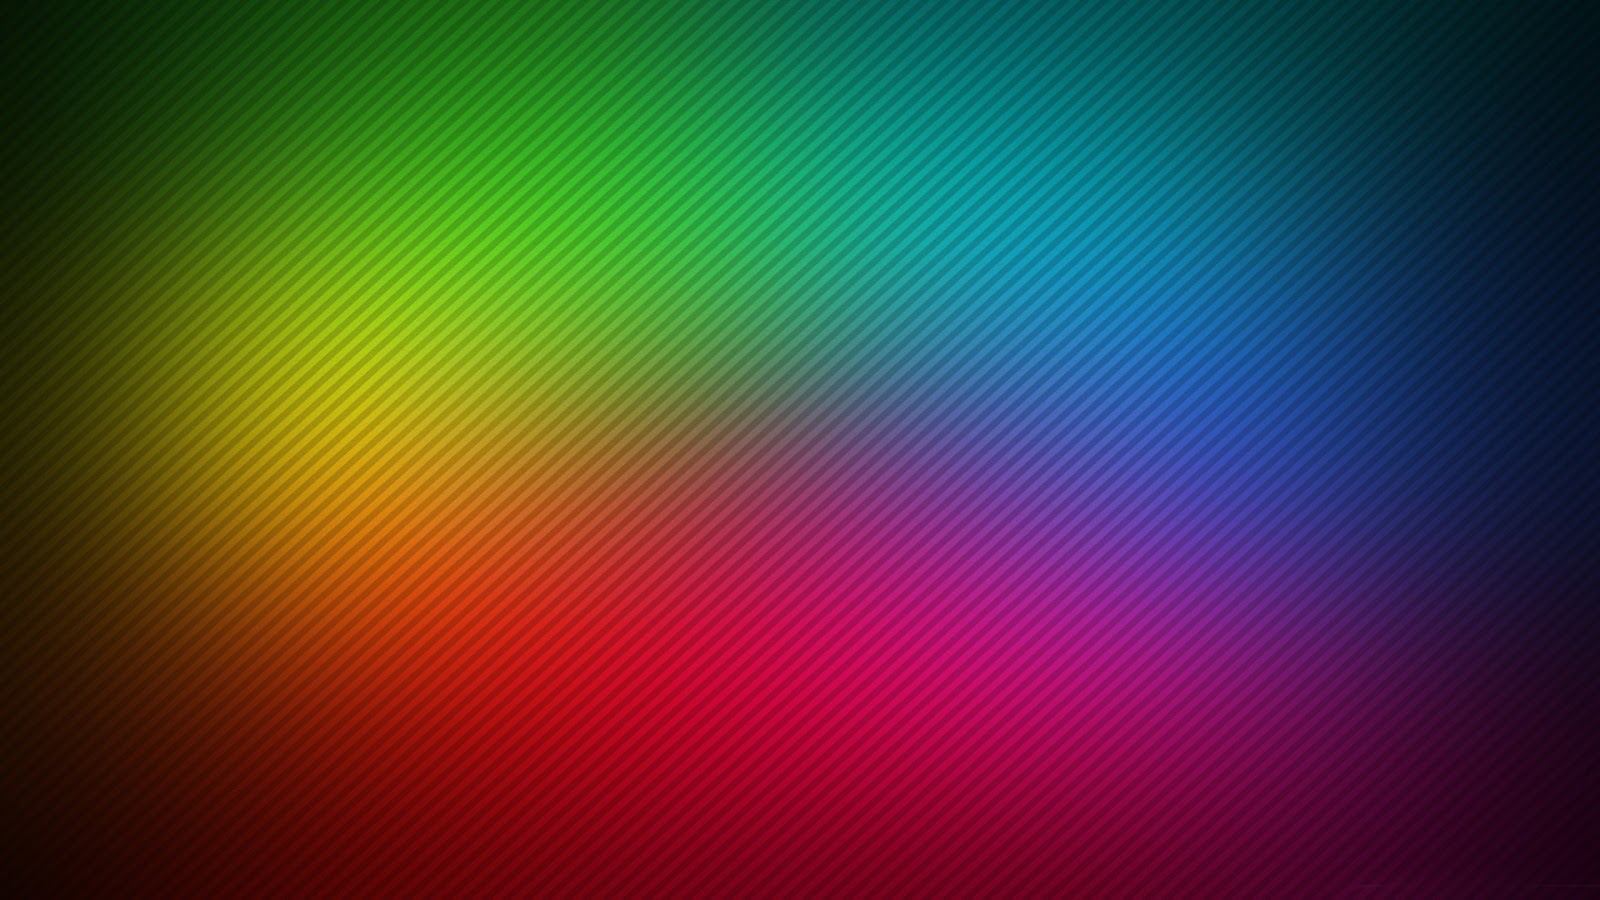 Tri Color Full Hd Desktop Wallpapers 1080p